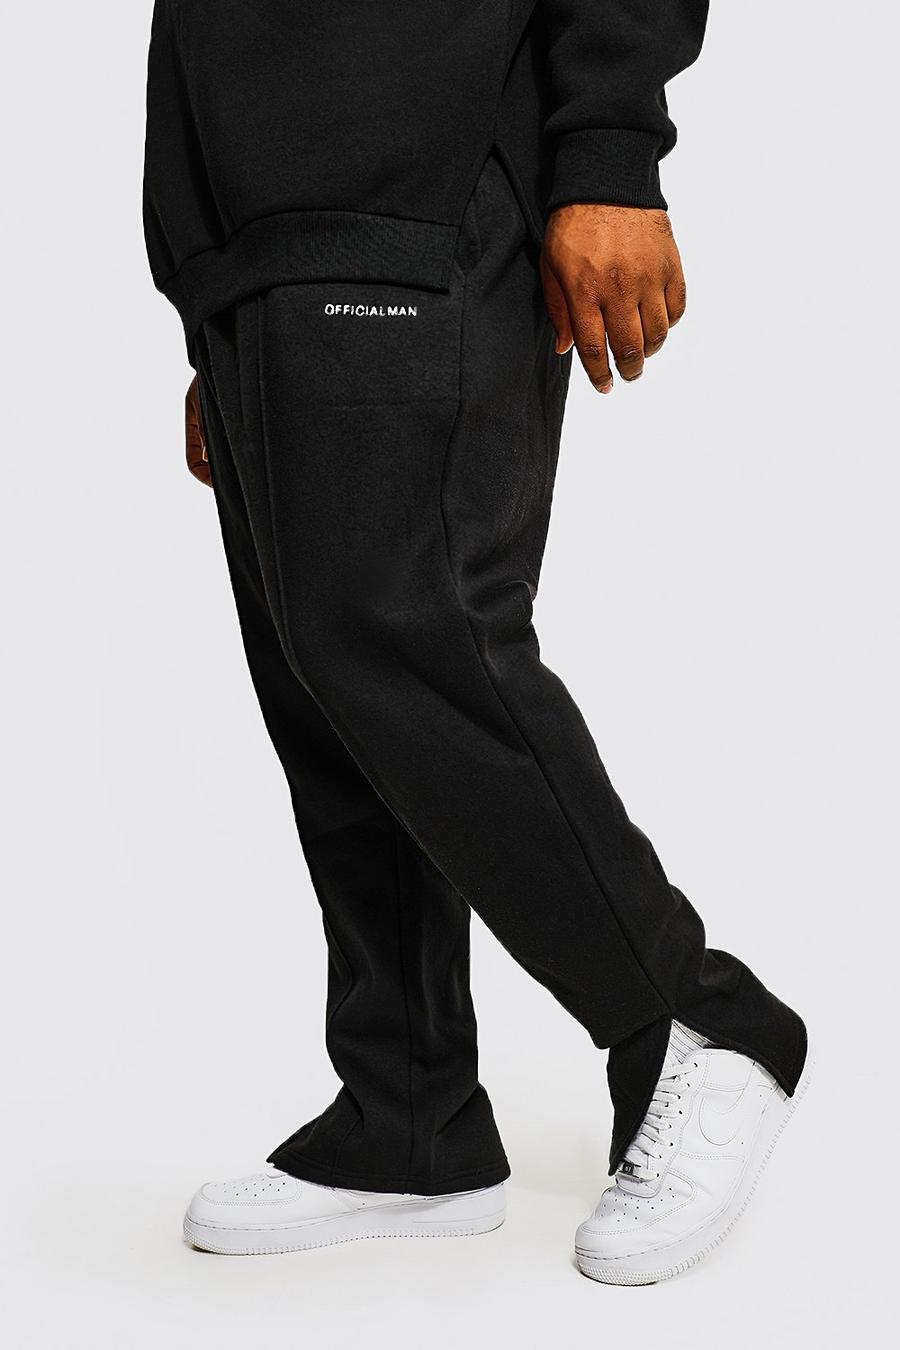 Pantalón deportivo Plus ajustado MAN Official con abertura en el bajo, Black nero image number 1